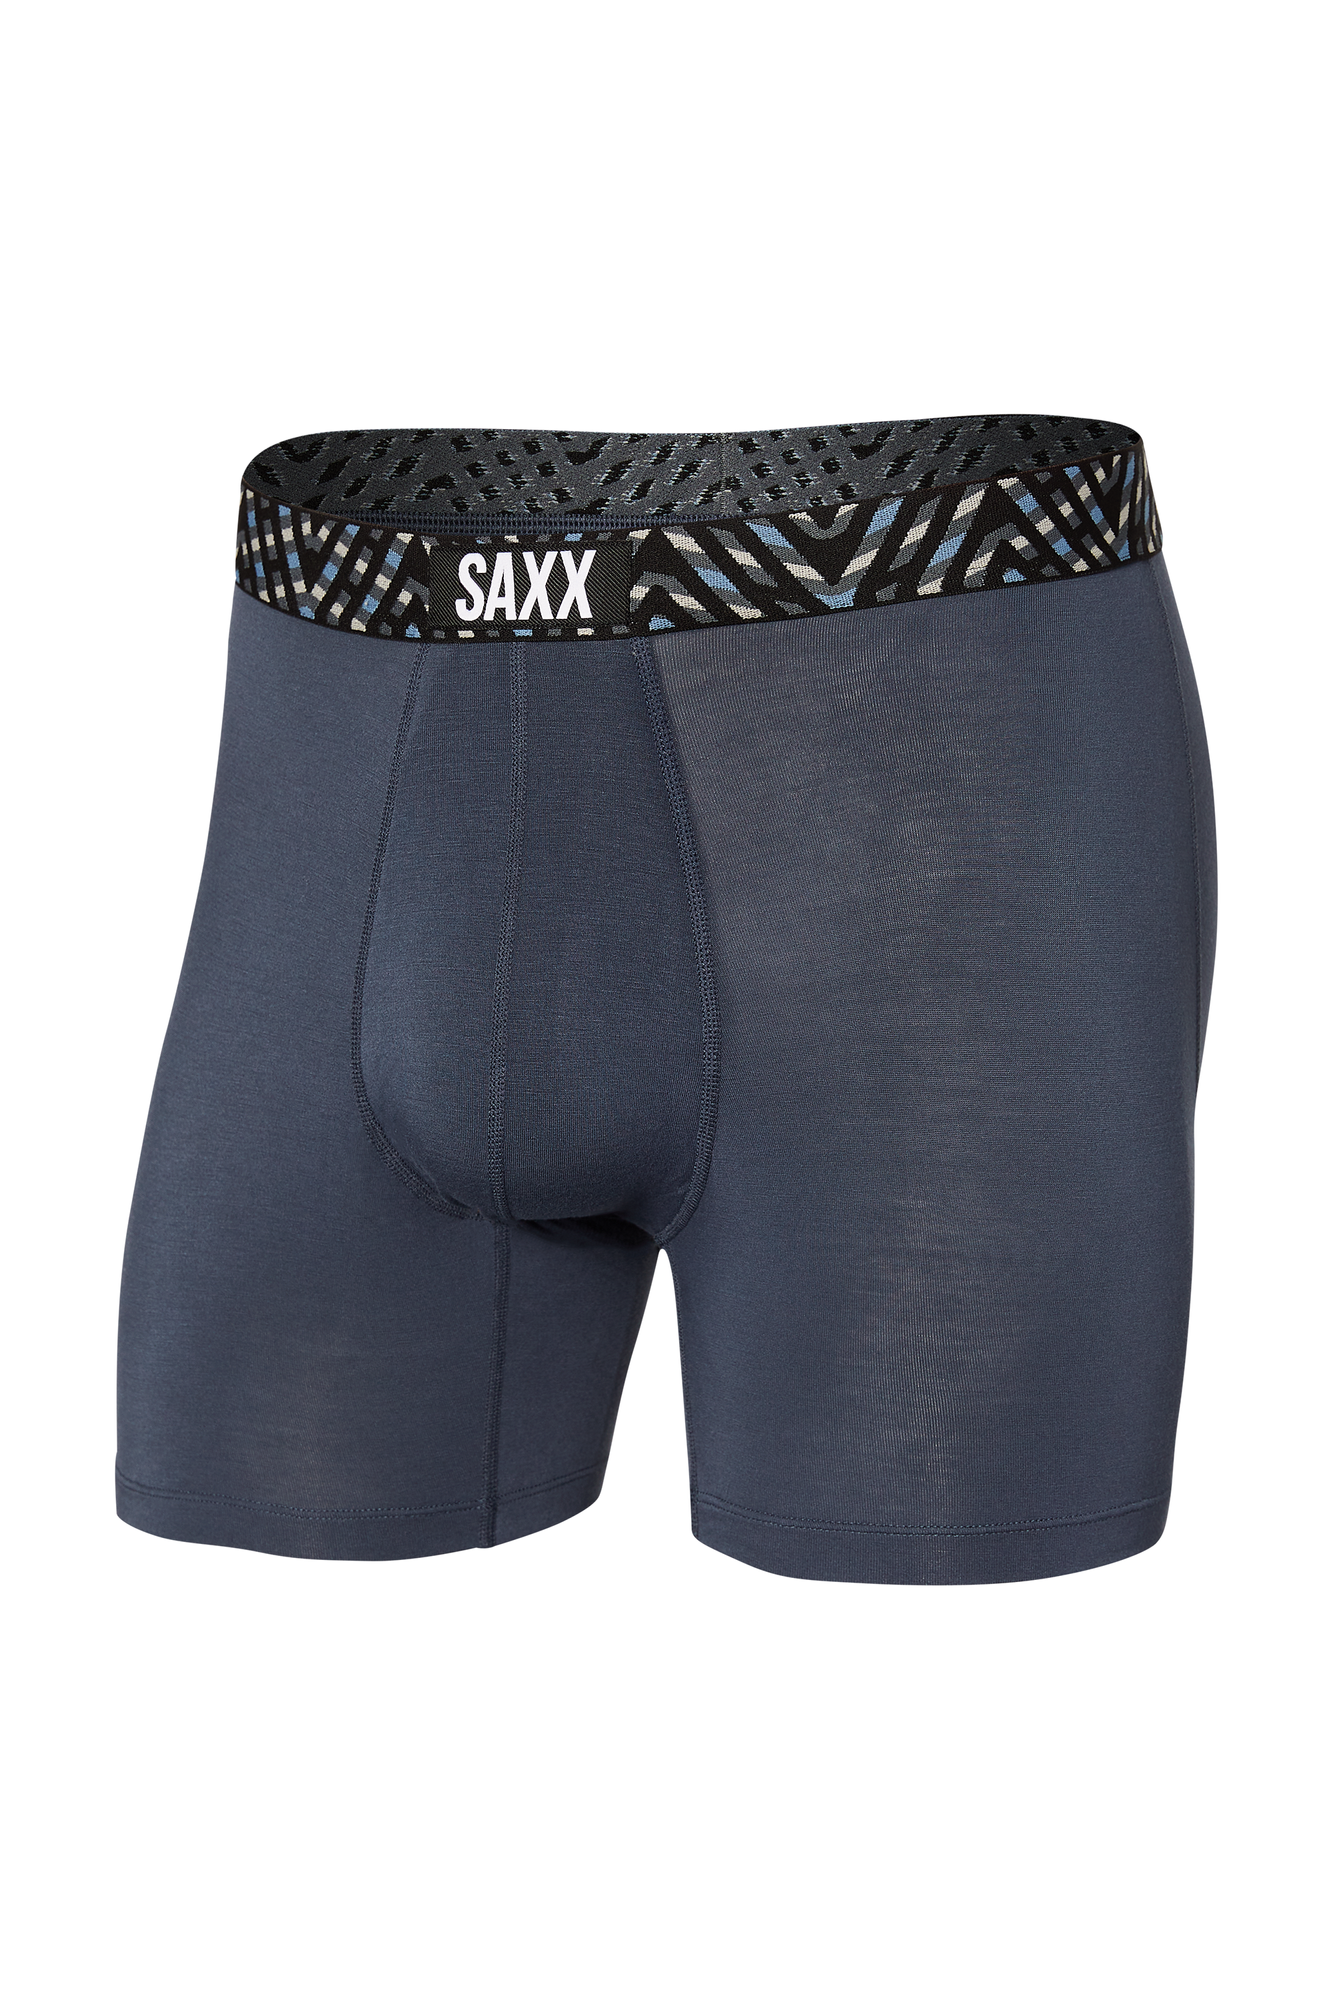  SAXX Underwear Co Mens Underwear - Vibe Super Soft